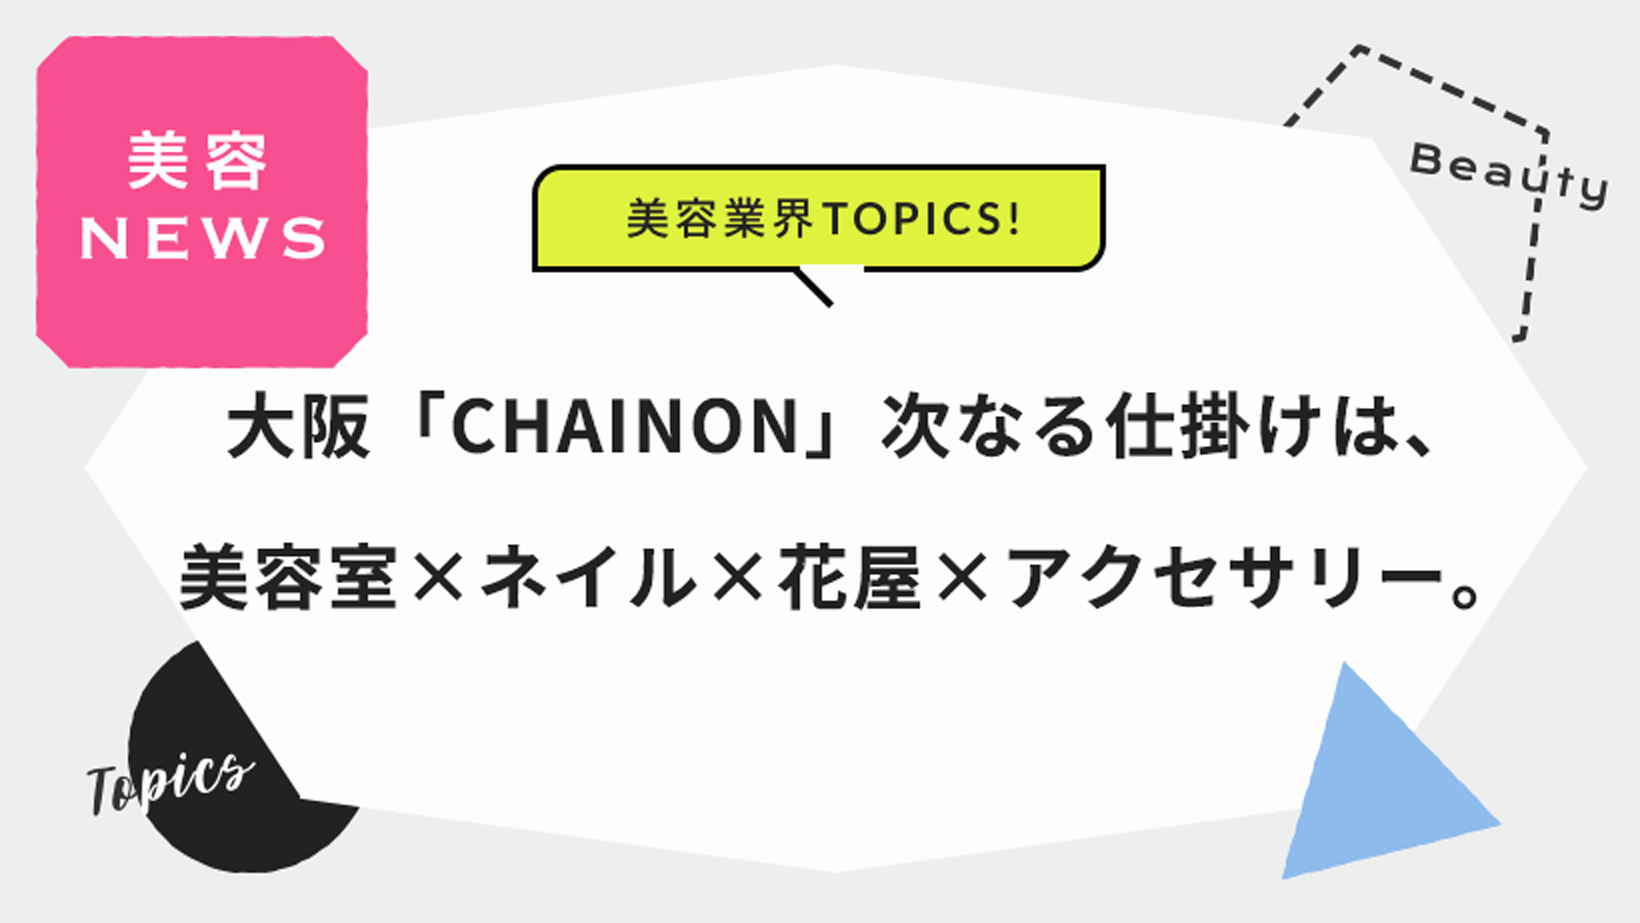 大阪「CHAINON」次なる仕掛けは、美容室×ネイル×花屋×アクセサリー。